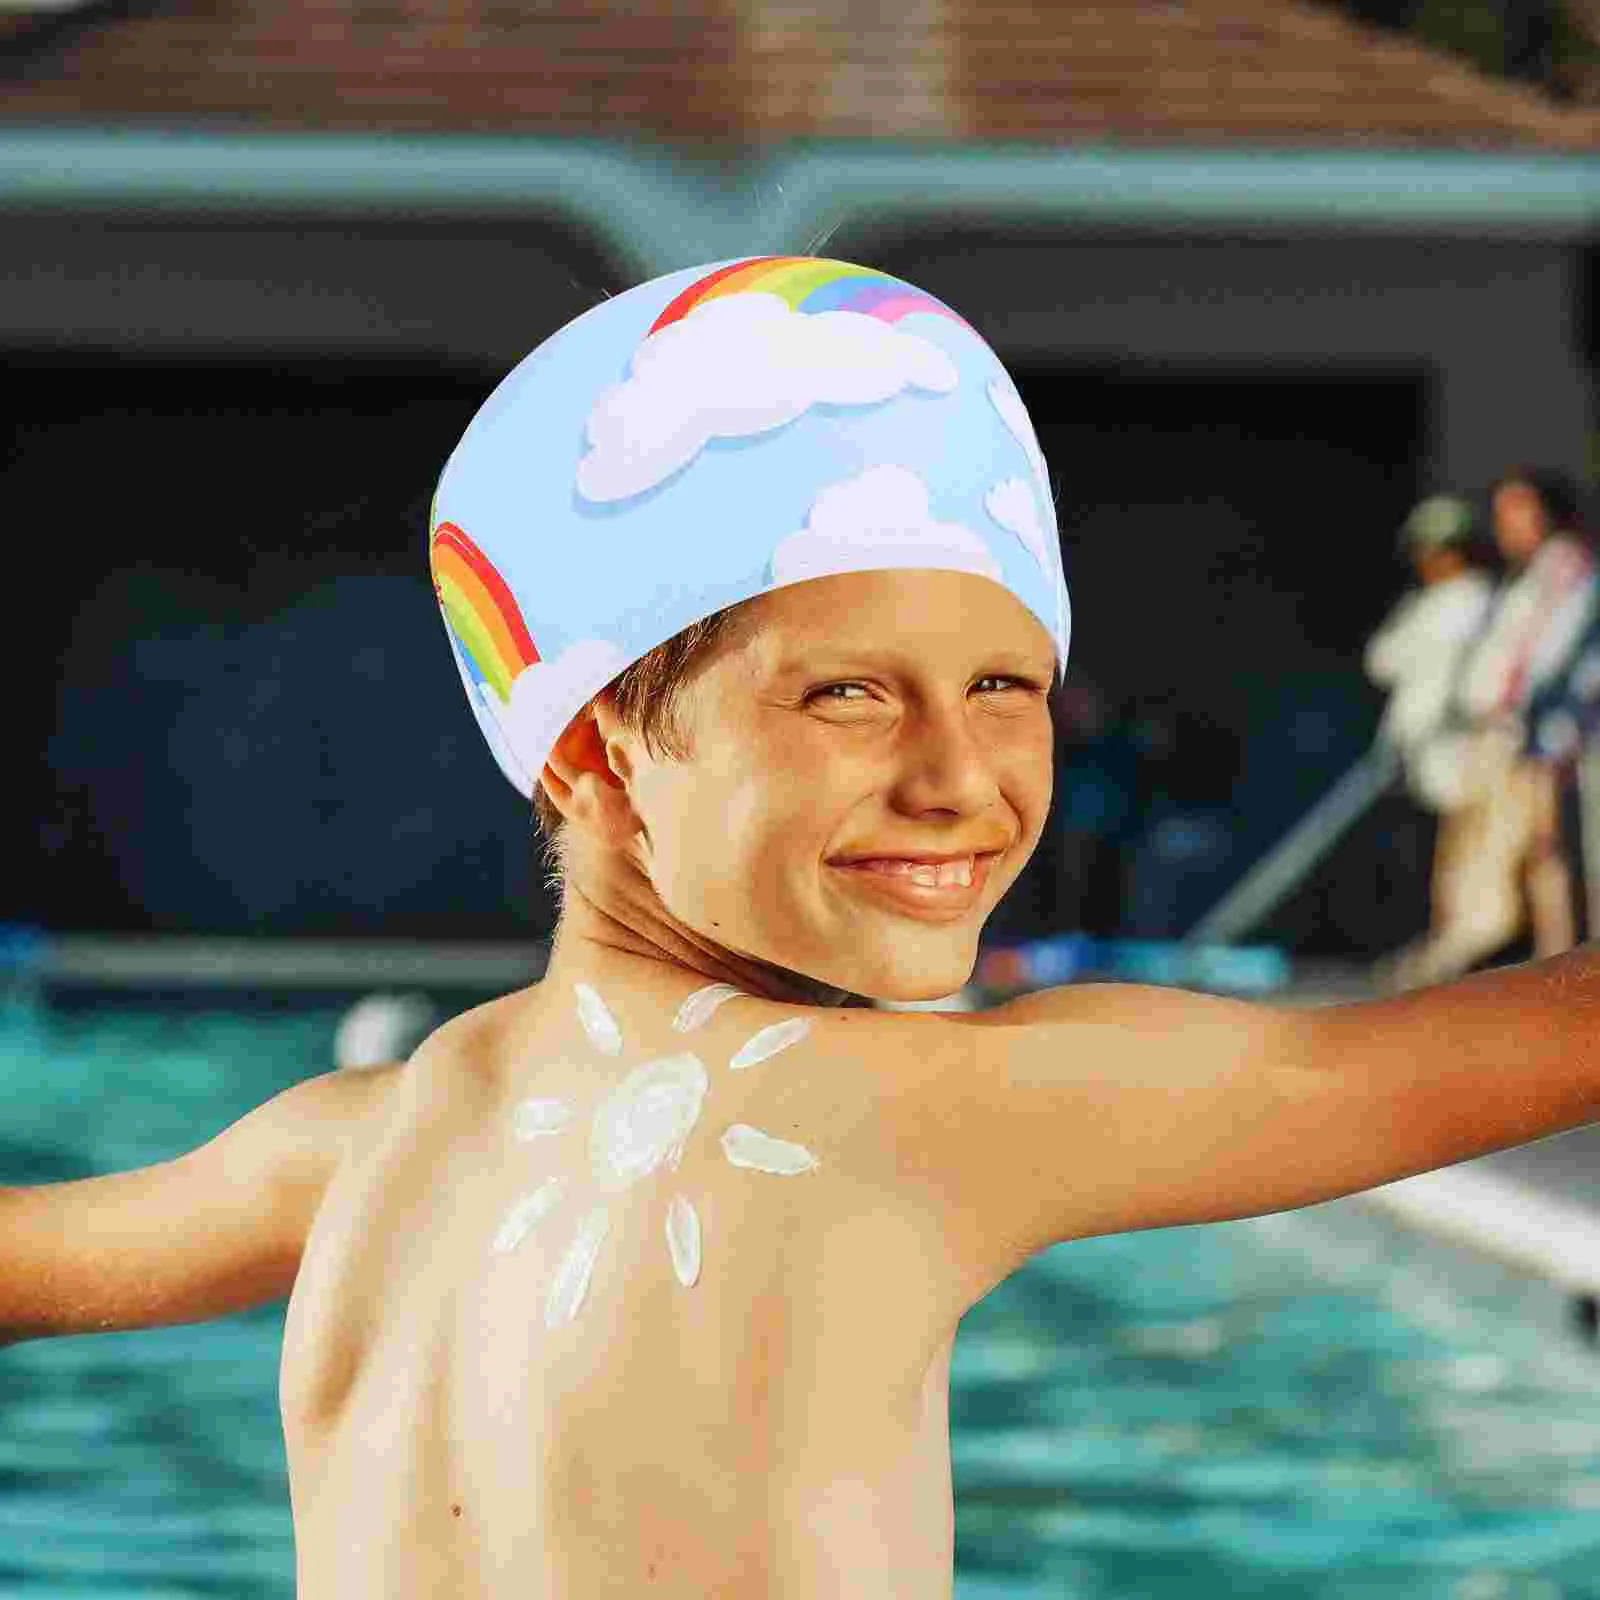 Детская шапочка для плавания из полиэстера, профессиональная модная шапочка для купания, удобная для ребенка